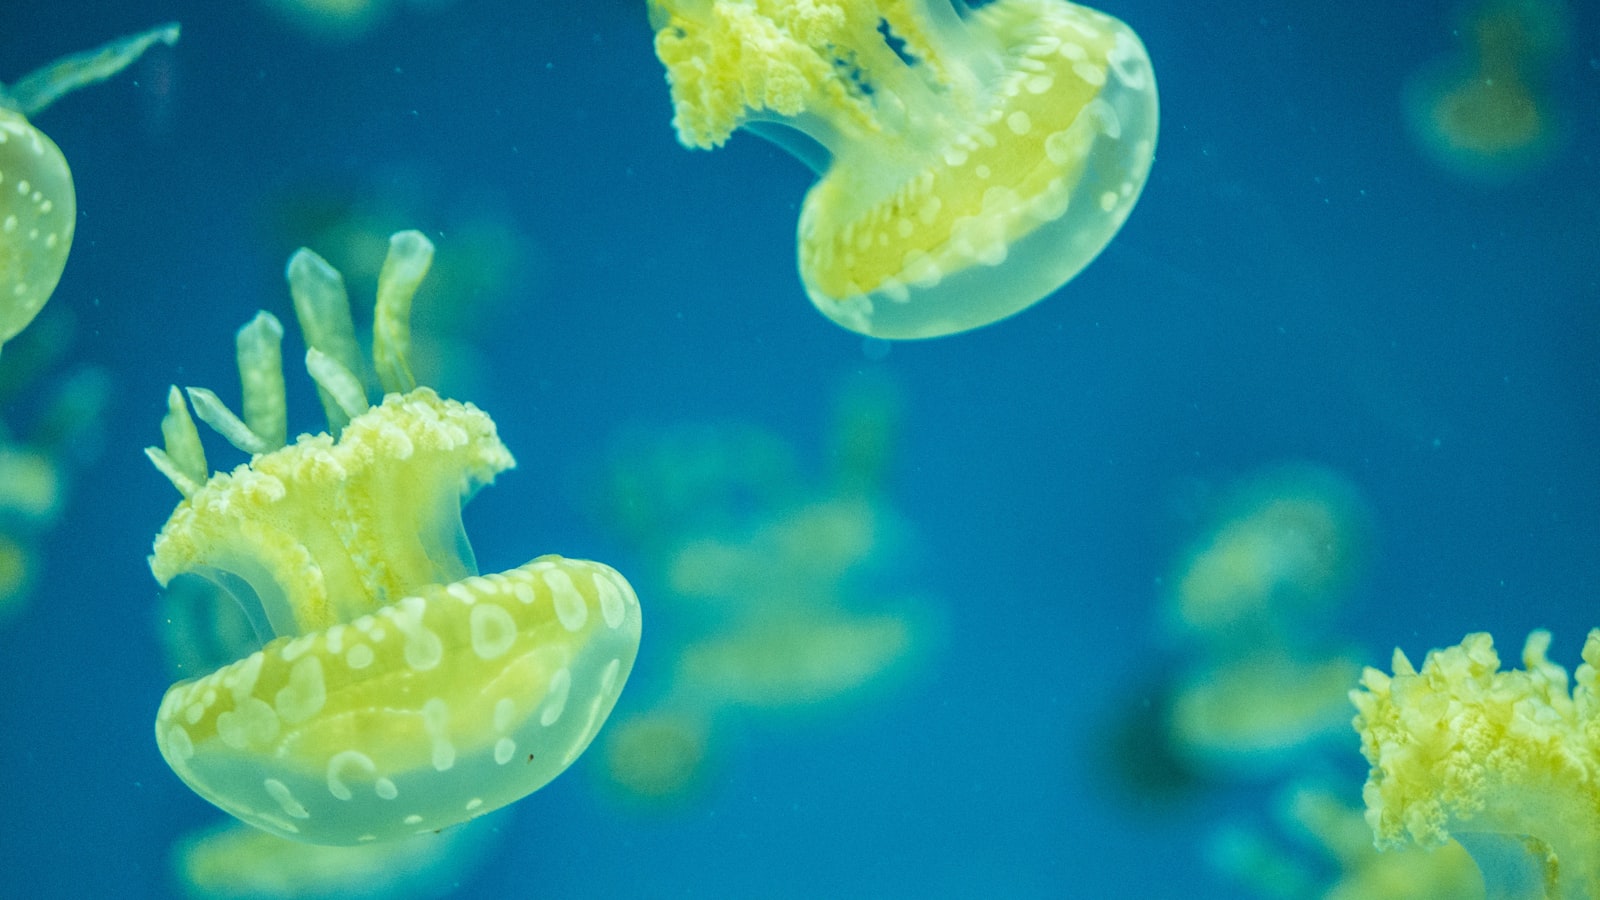 Panasonic Lumix DMC-G7 + LUMIX G 25/F1.7 sample photo. Jellyfishes underwater photography